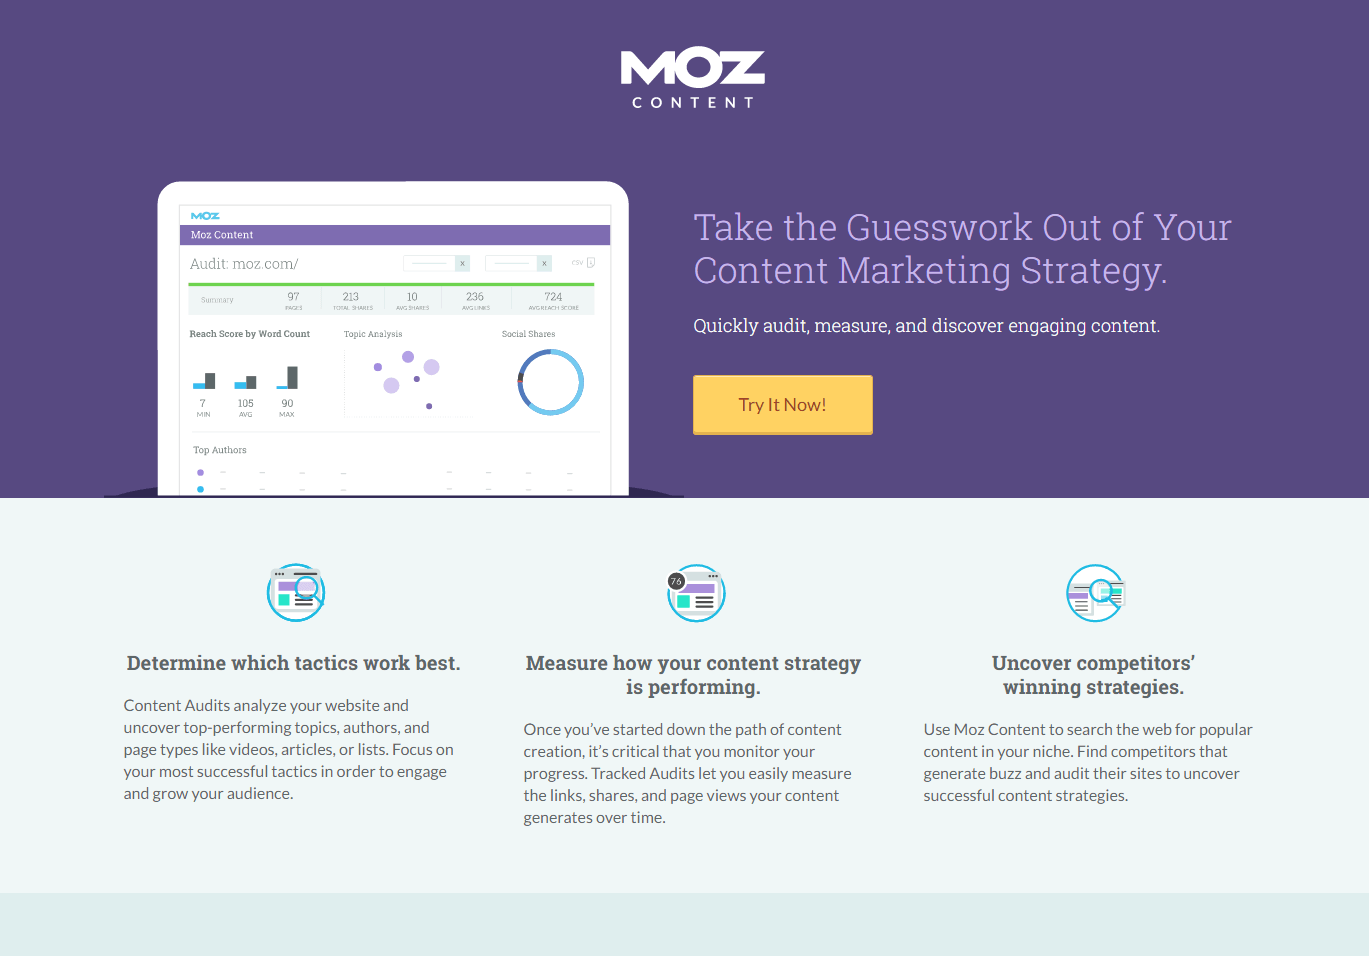 ตัวอย่างหน้า Landing Page ของ Moz หลังคลิก